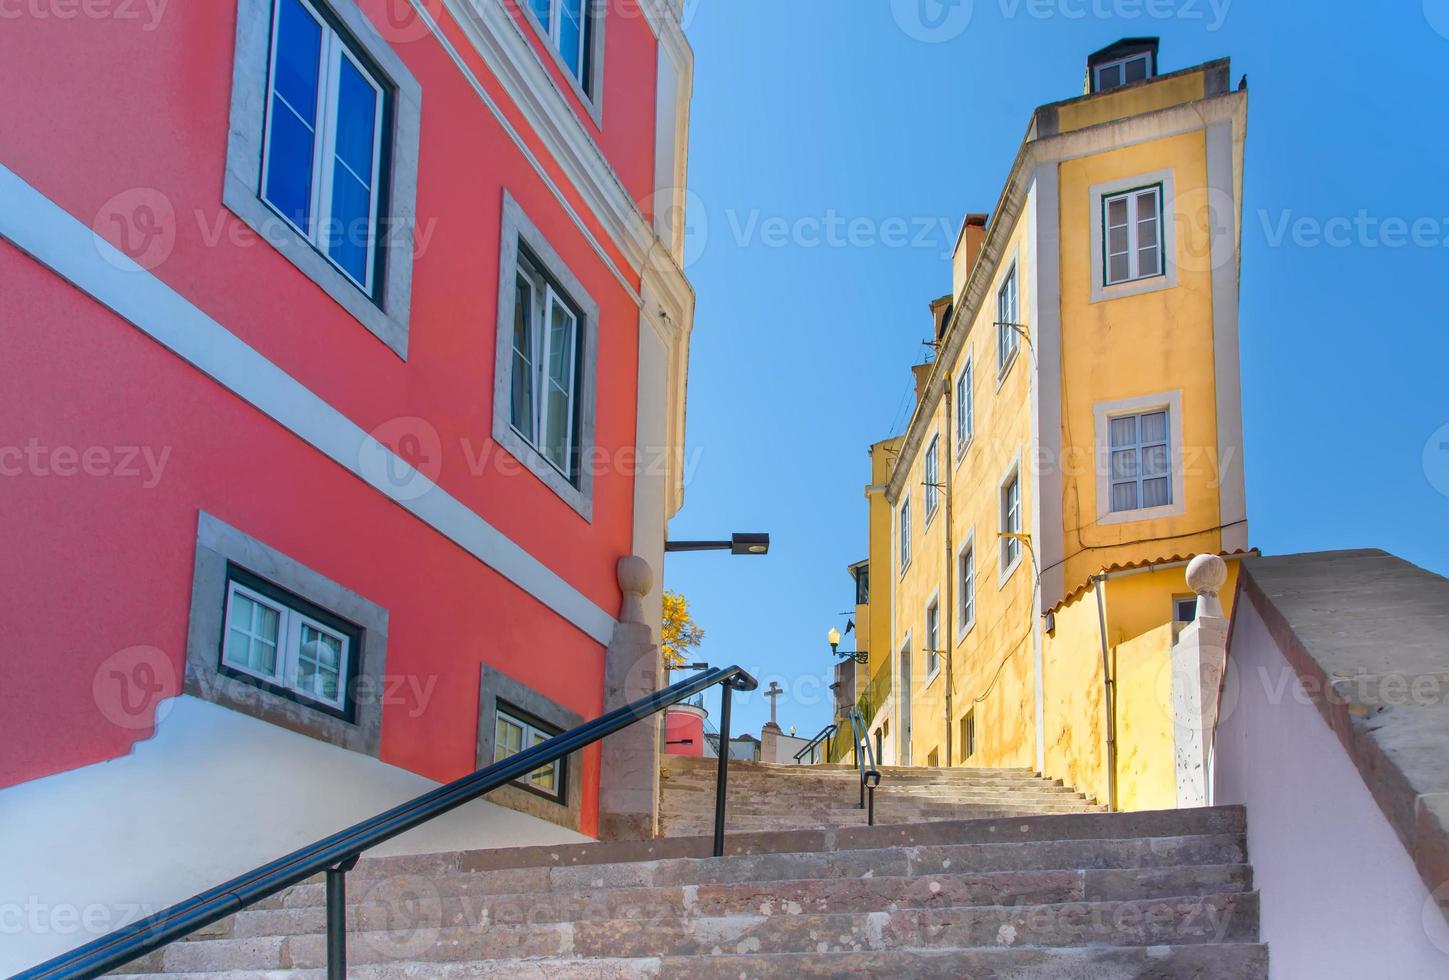 arquitectura portuguesa típica y edificios coloridos del centro histórico de la ciudad de lisboa foto